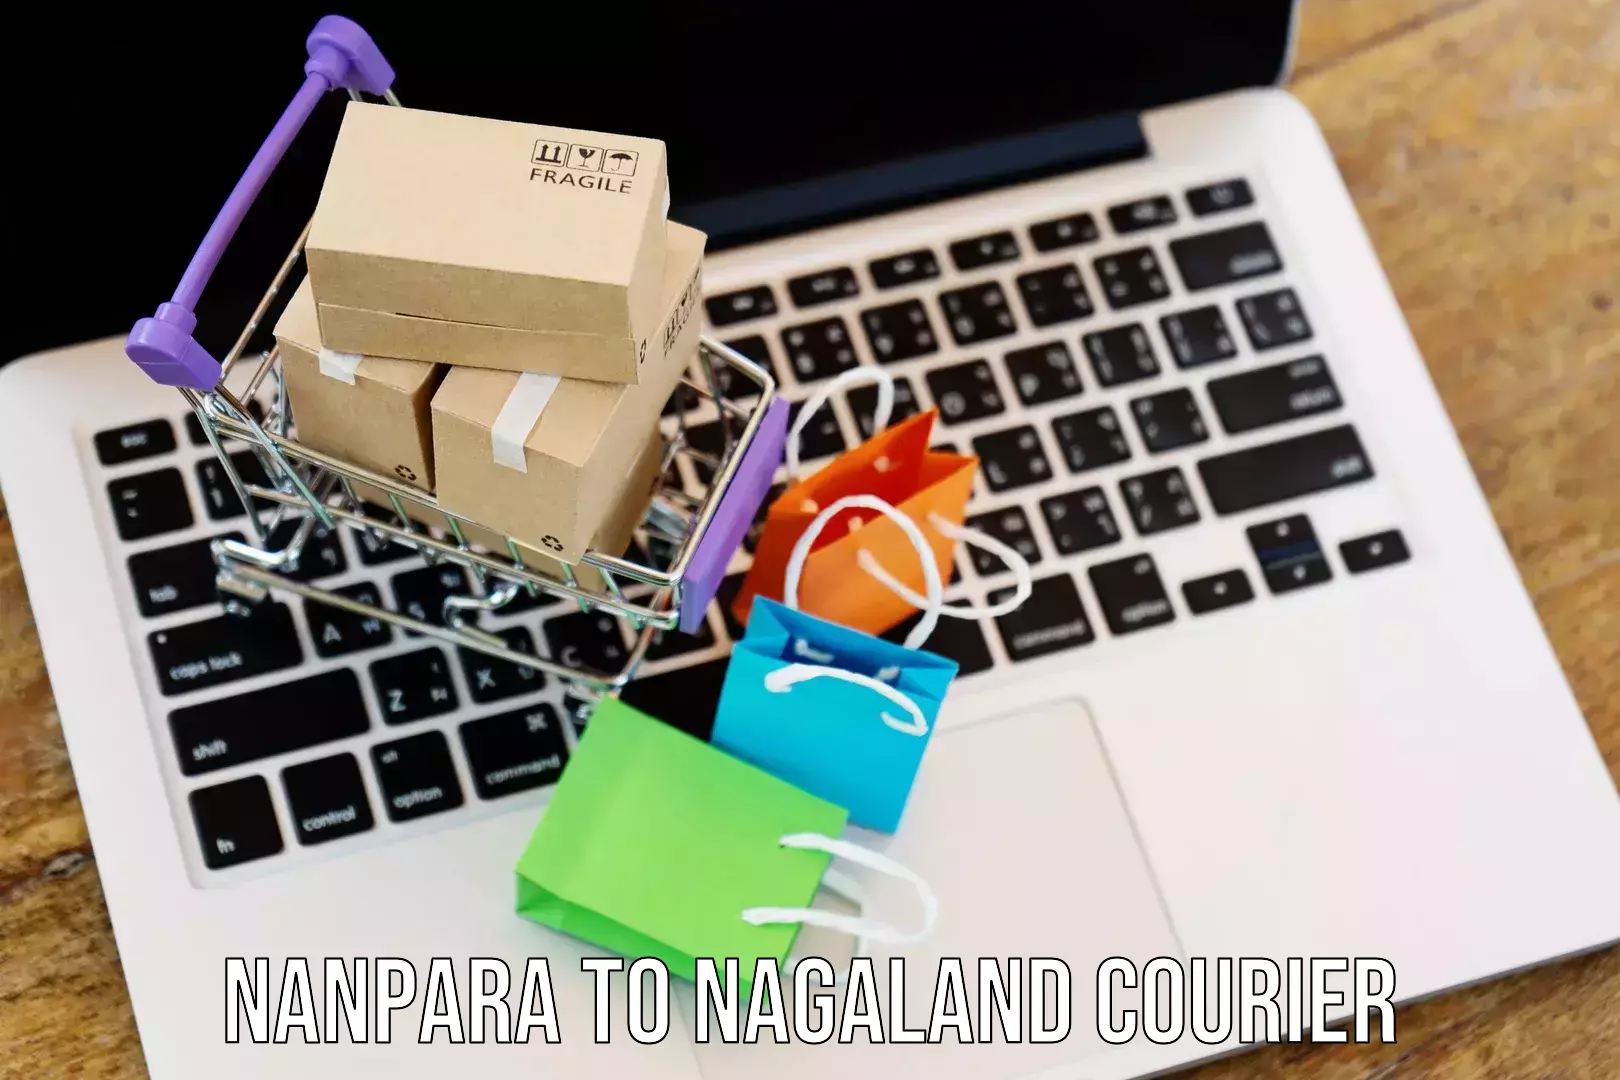 Delivery service partnership Nanpara to NIT Nagaland